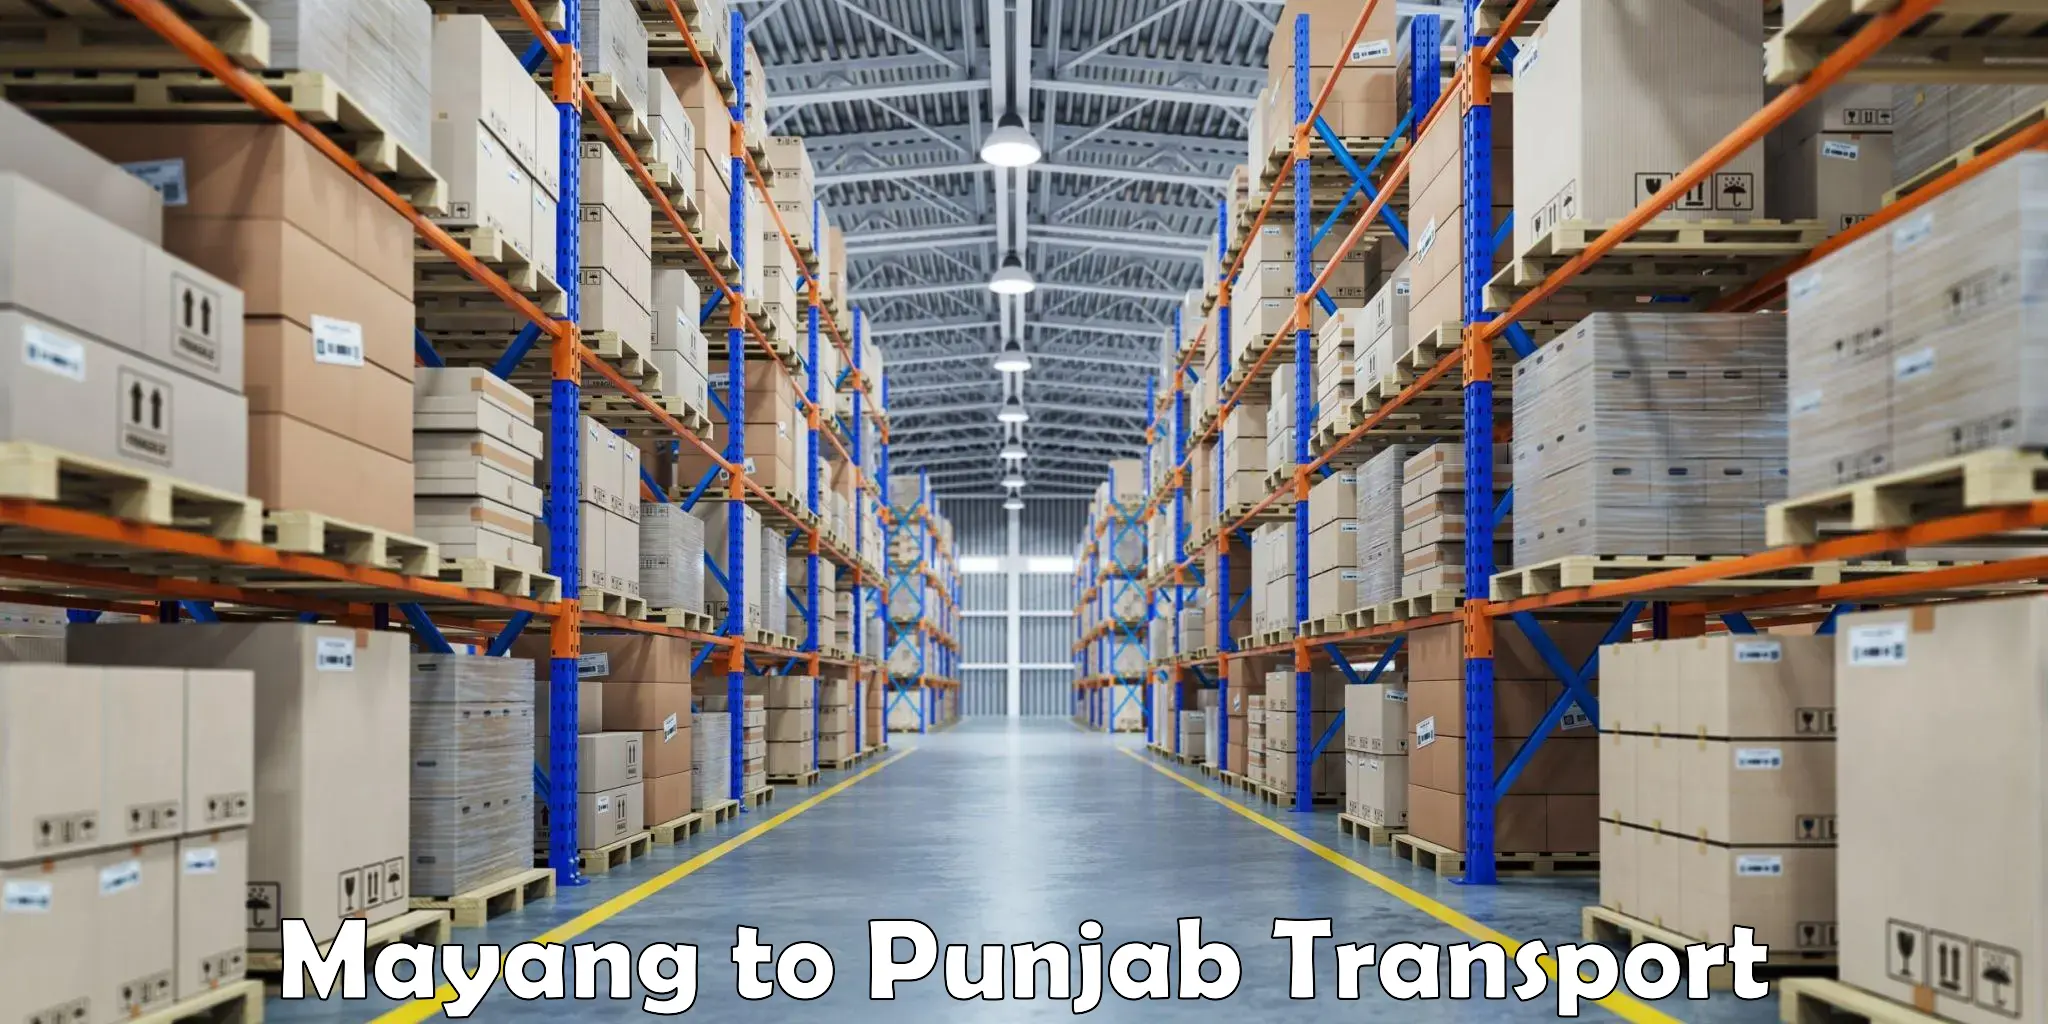 Furniture transport service Mayang to Punjab